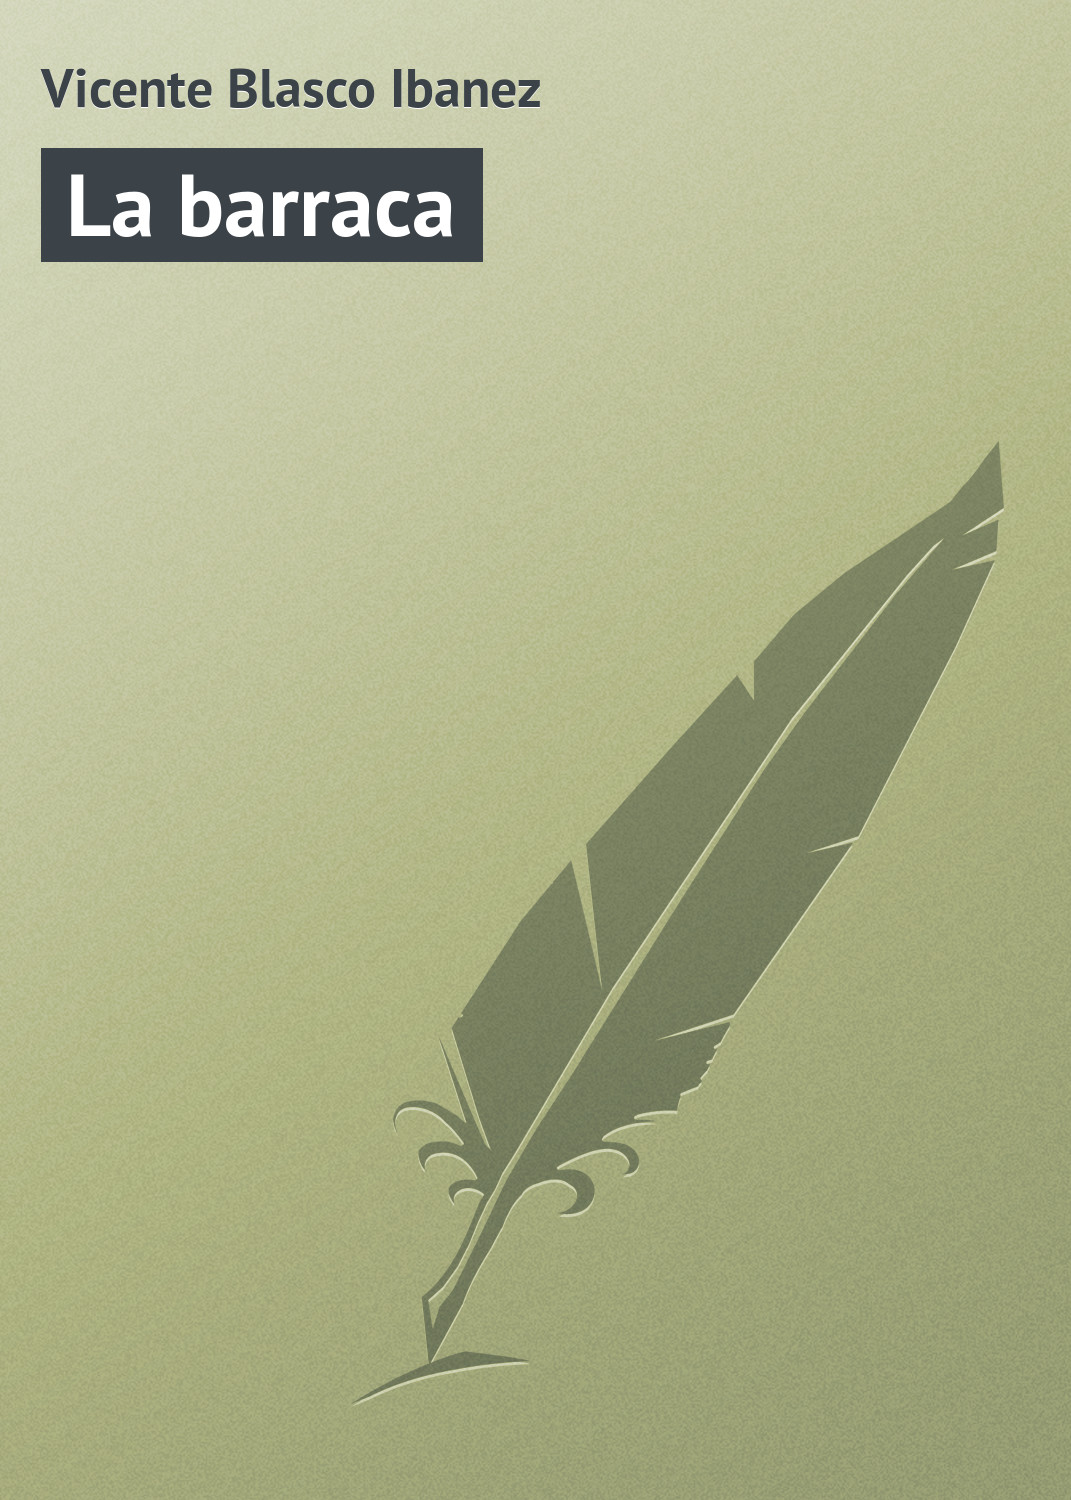 Книга La barraca из серии , созданная Vicente Blasco, может относится к жанру Зарубежная старинная литература, Зарубежная классика. Стоимость электронной книги La barraca с идентификатором 21107694 составляет 5.99 руб.